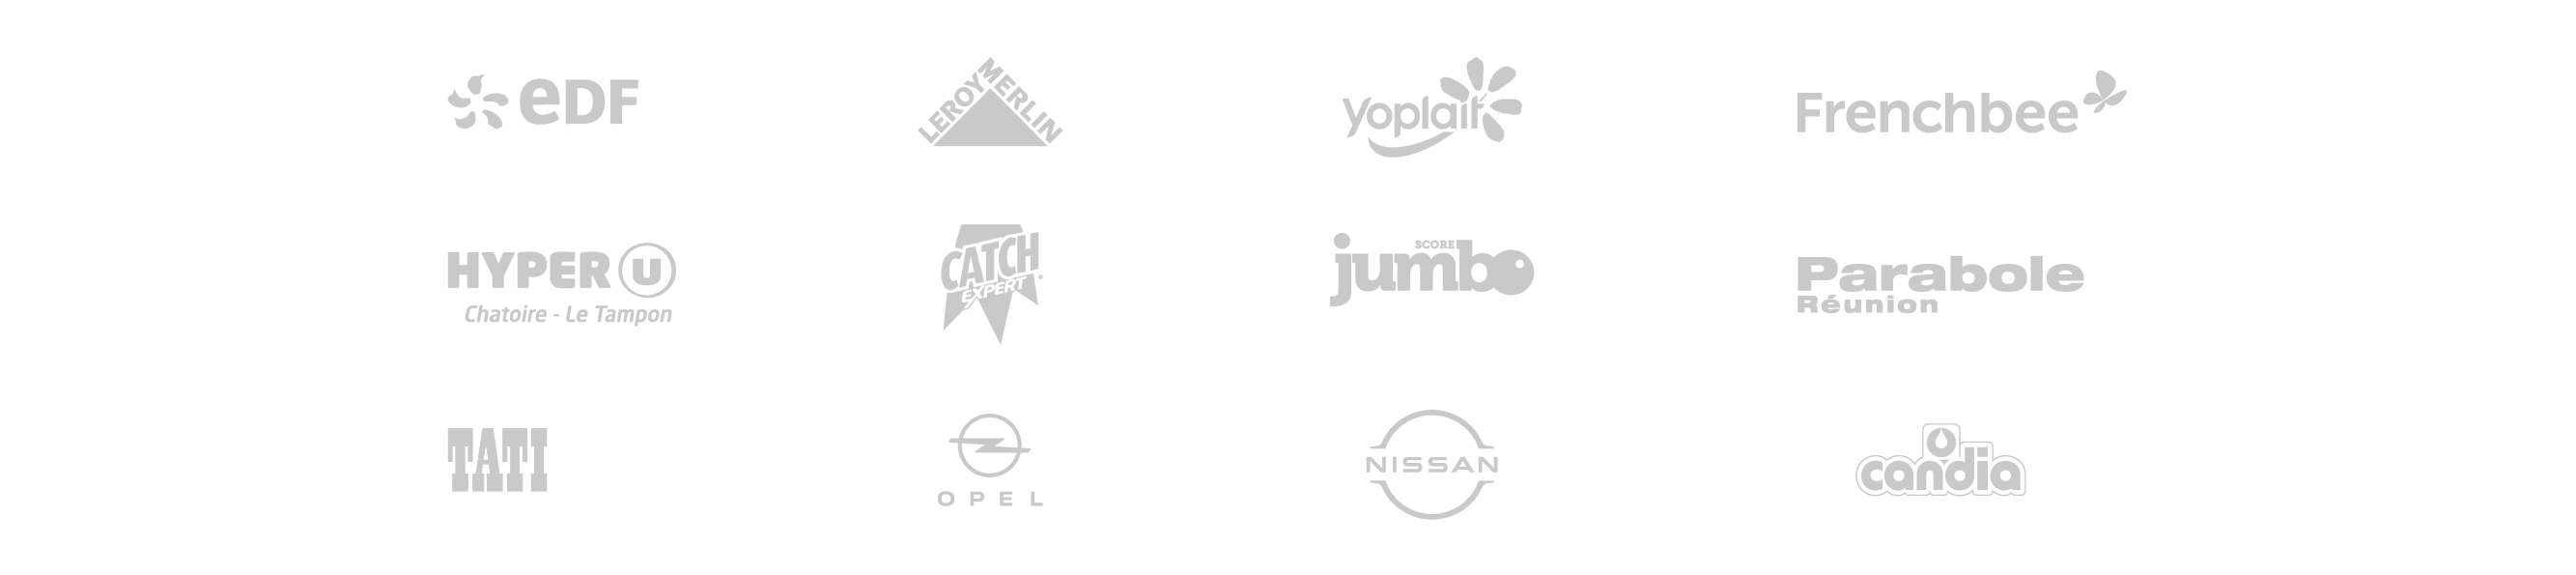 logos des marques